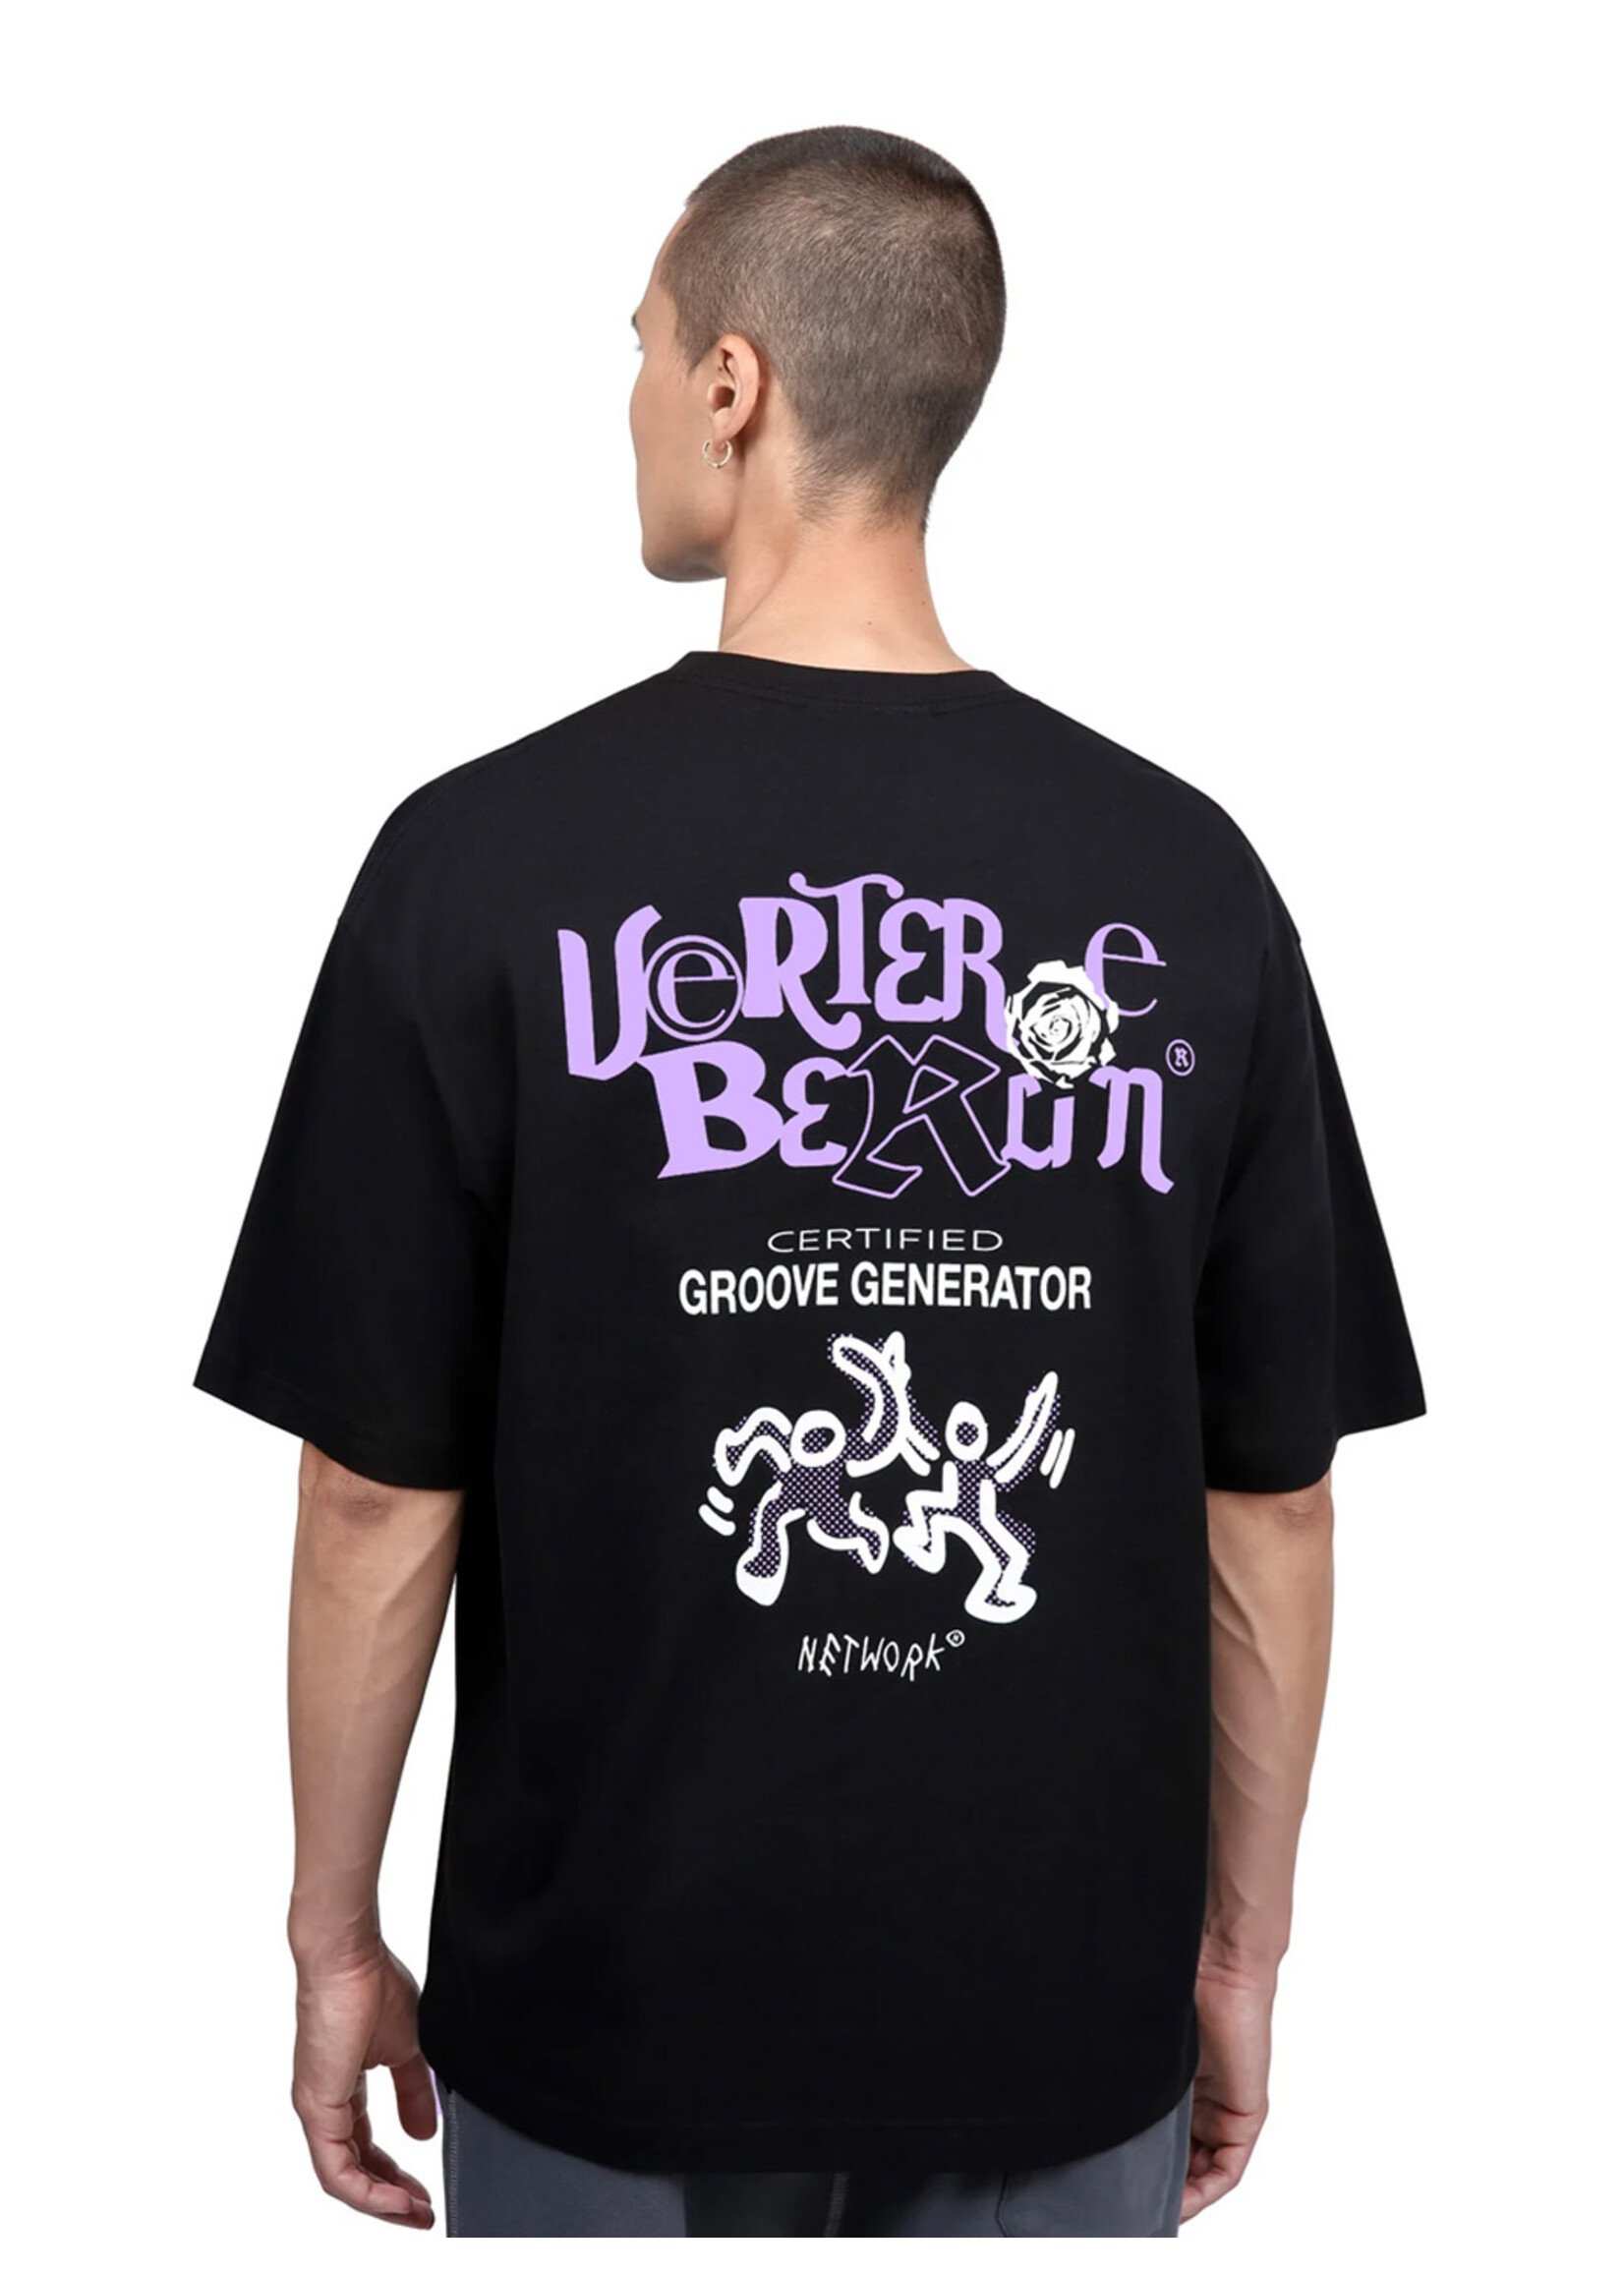 Vertere Berlin Groove Generator T-shirt Black VER-T229-BLK